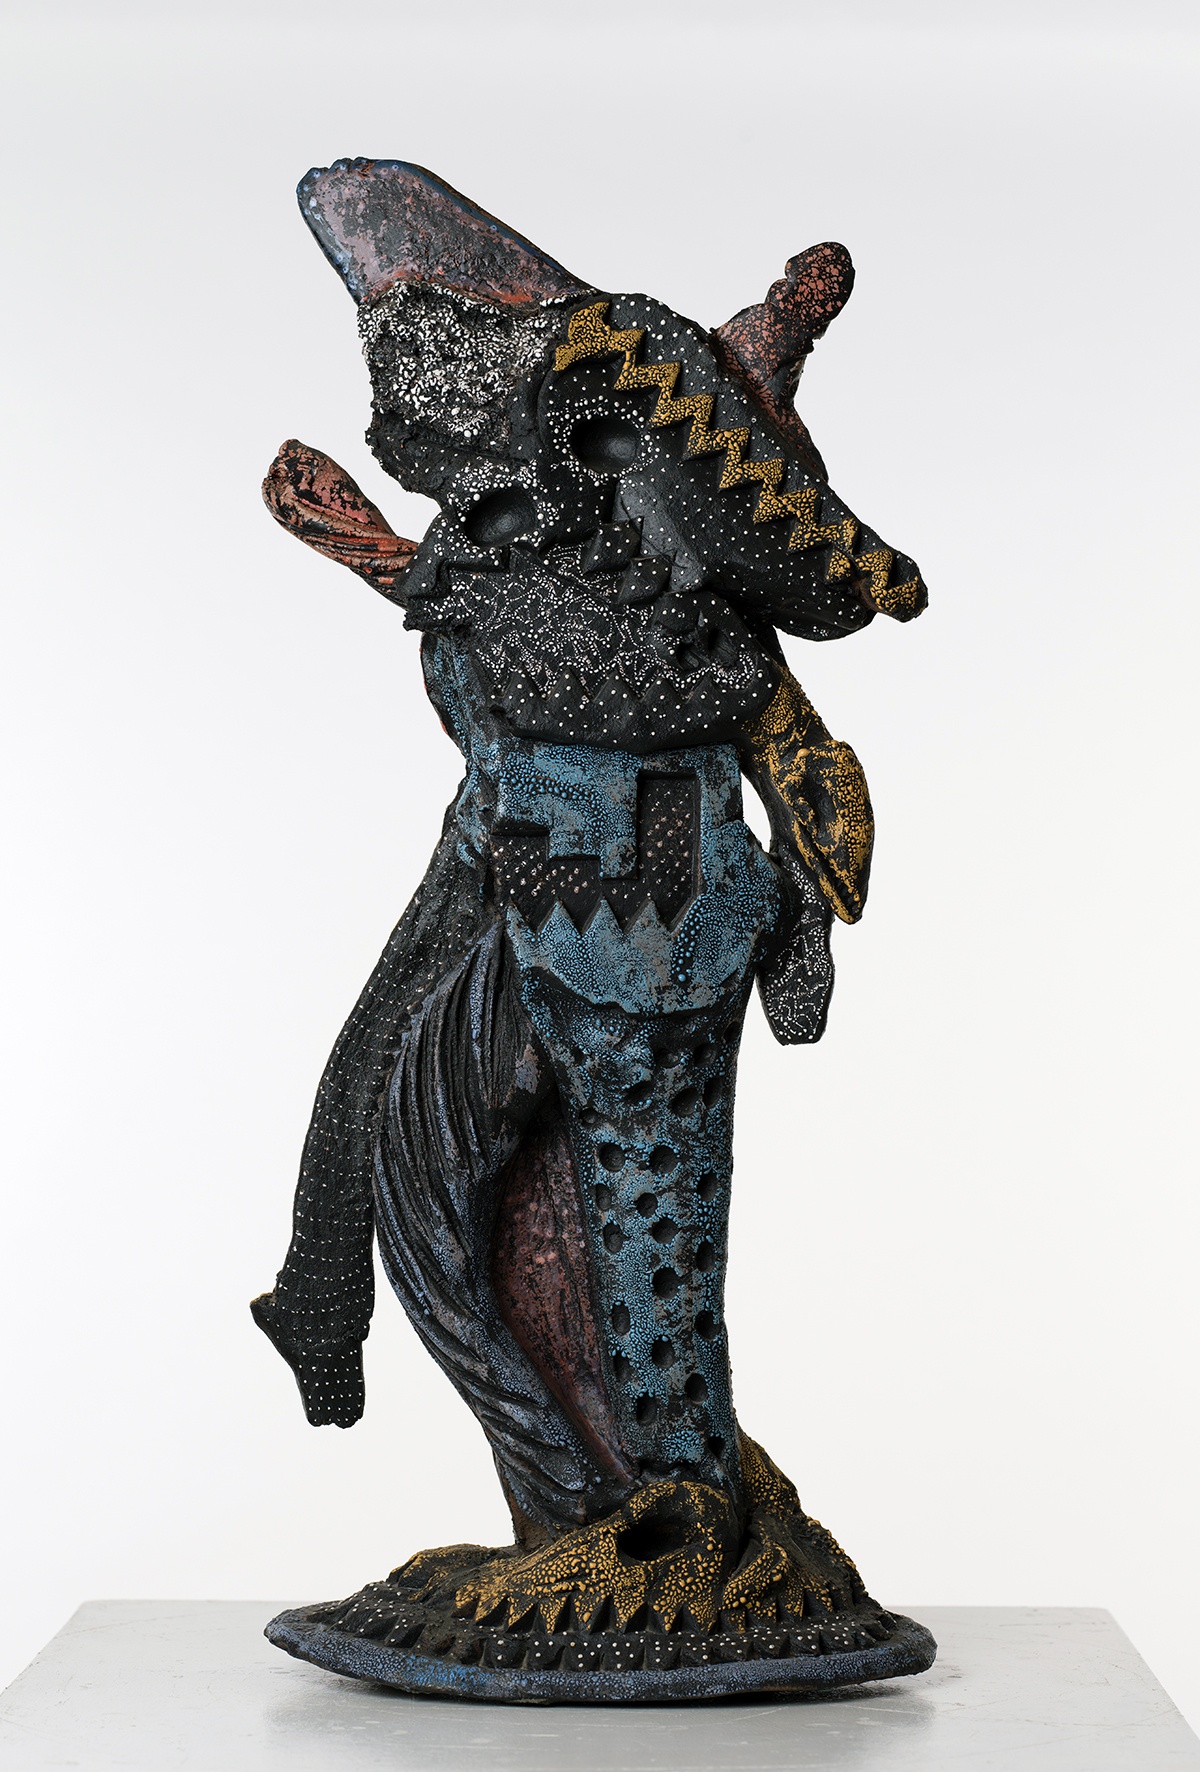 Untitled Ceramic Animal like figure, black and multicolor